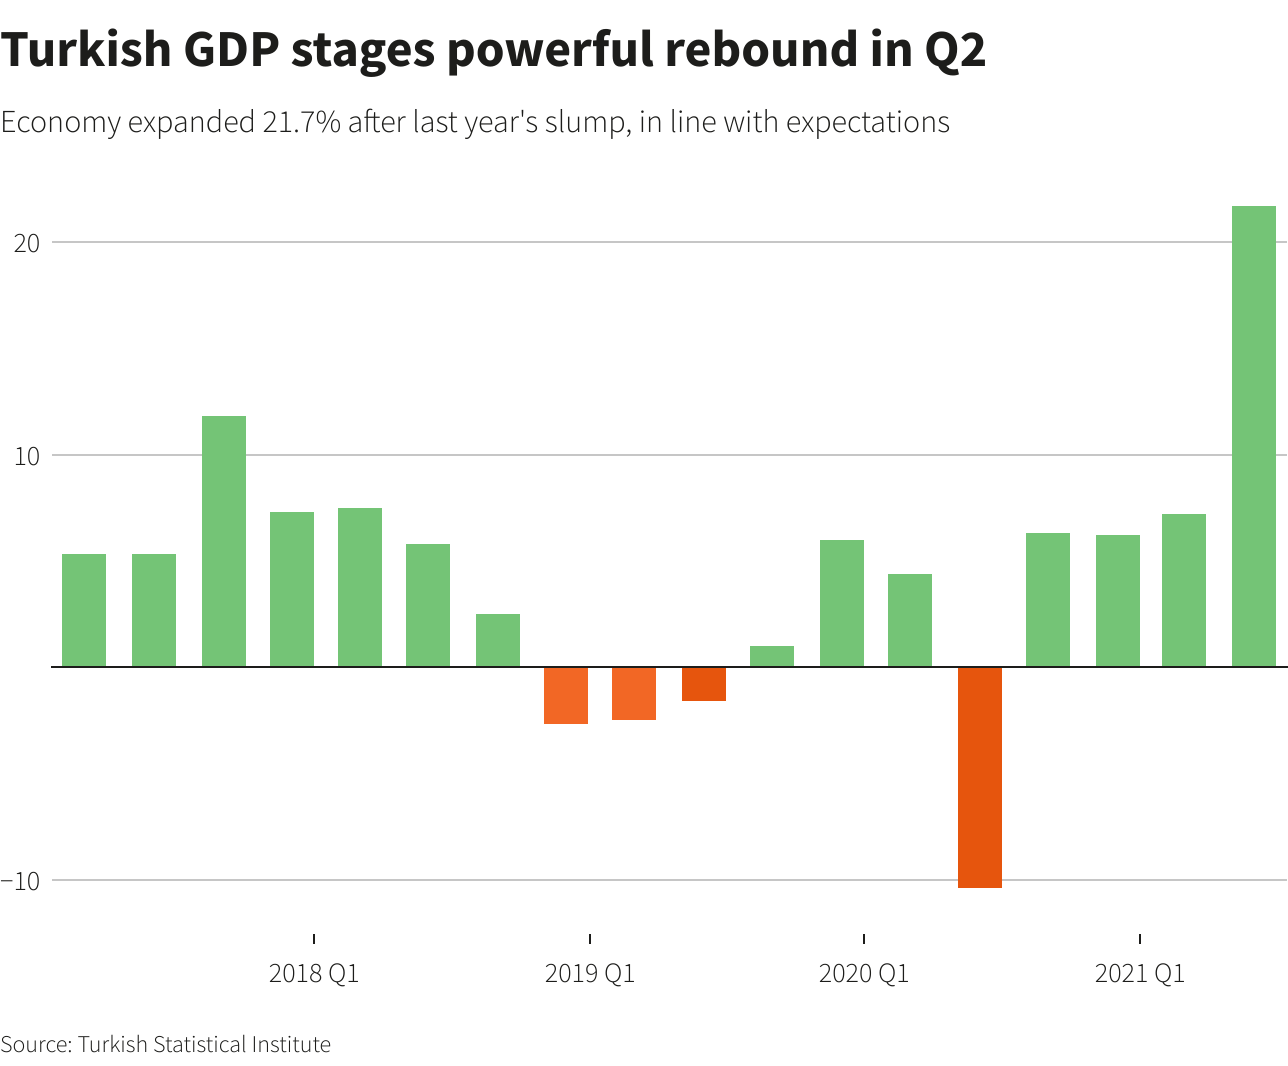 Turkish GDP stages powerful rebound in Q2